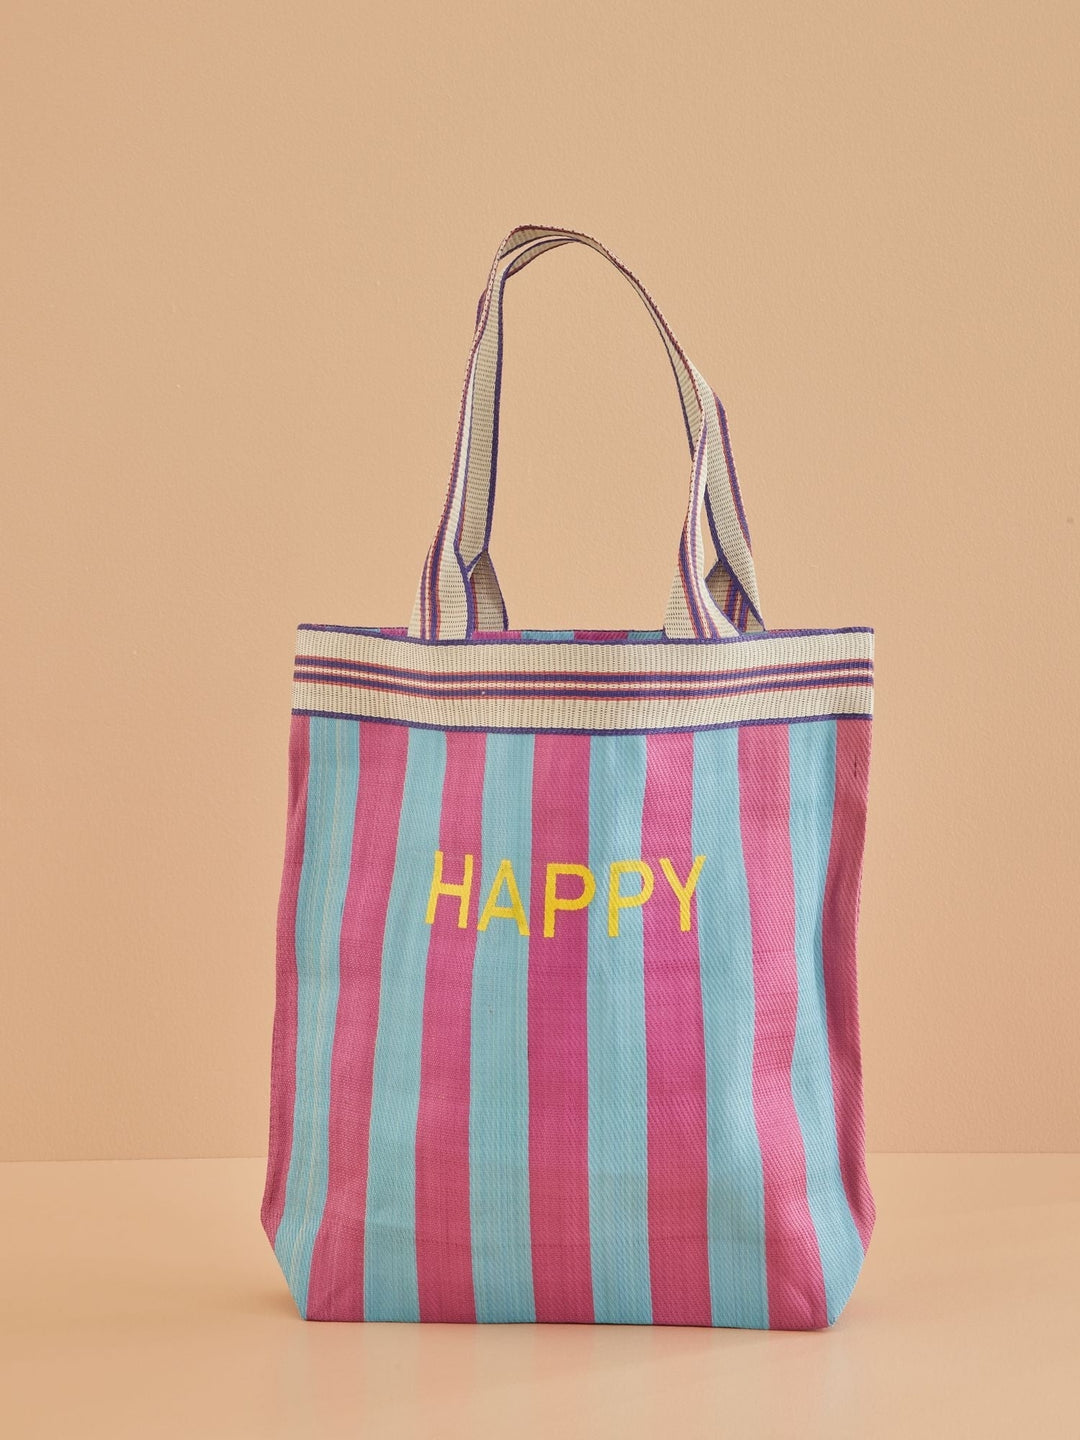 Recycelte Plastik-Einkaufstasche - "HAPPY"